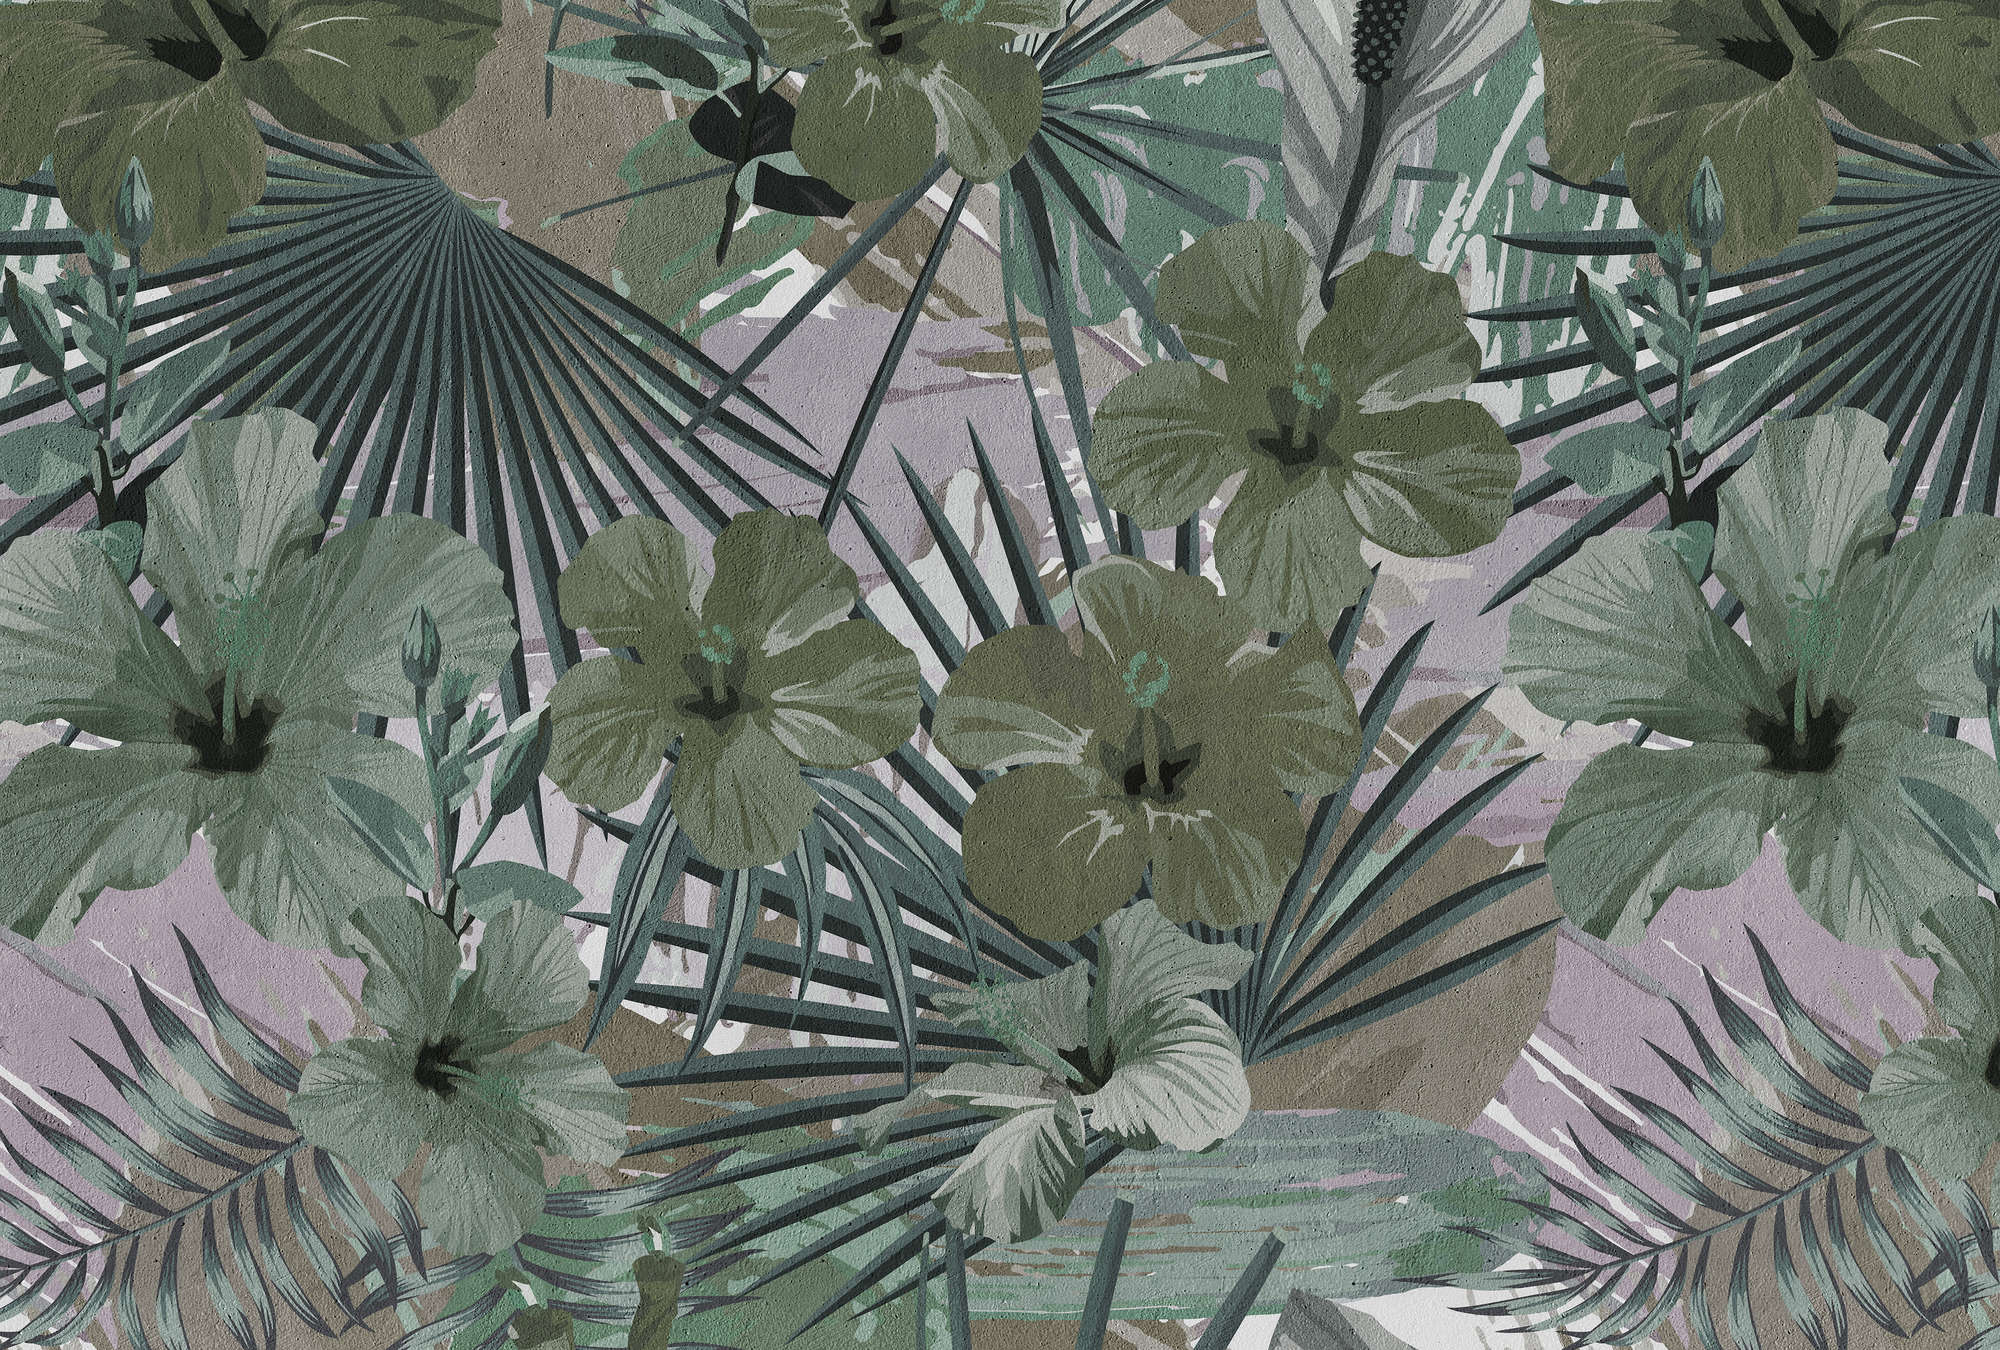             Fototapete Dschungel Palmen und Blume – Grün, Grau
        